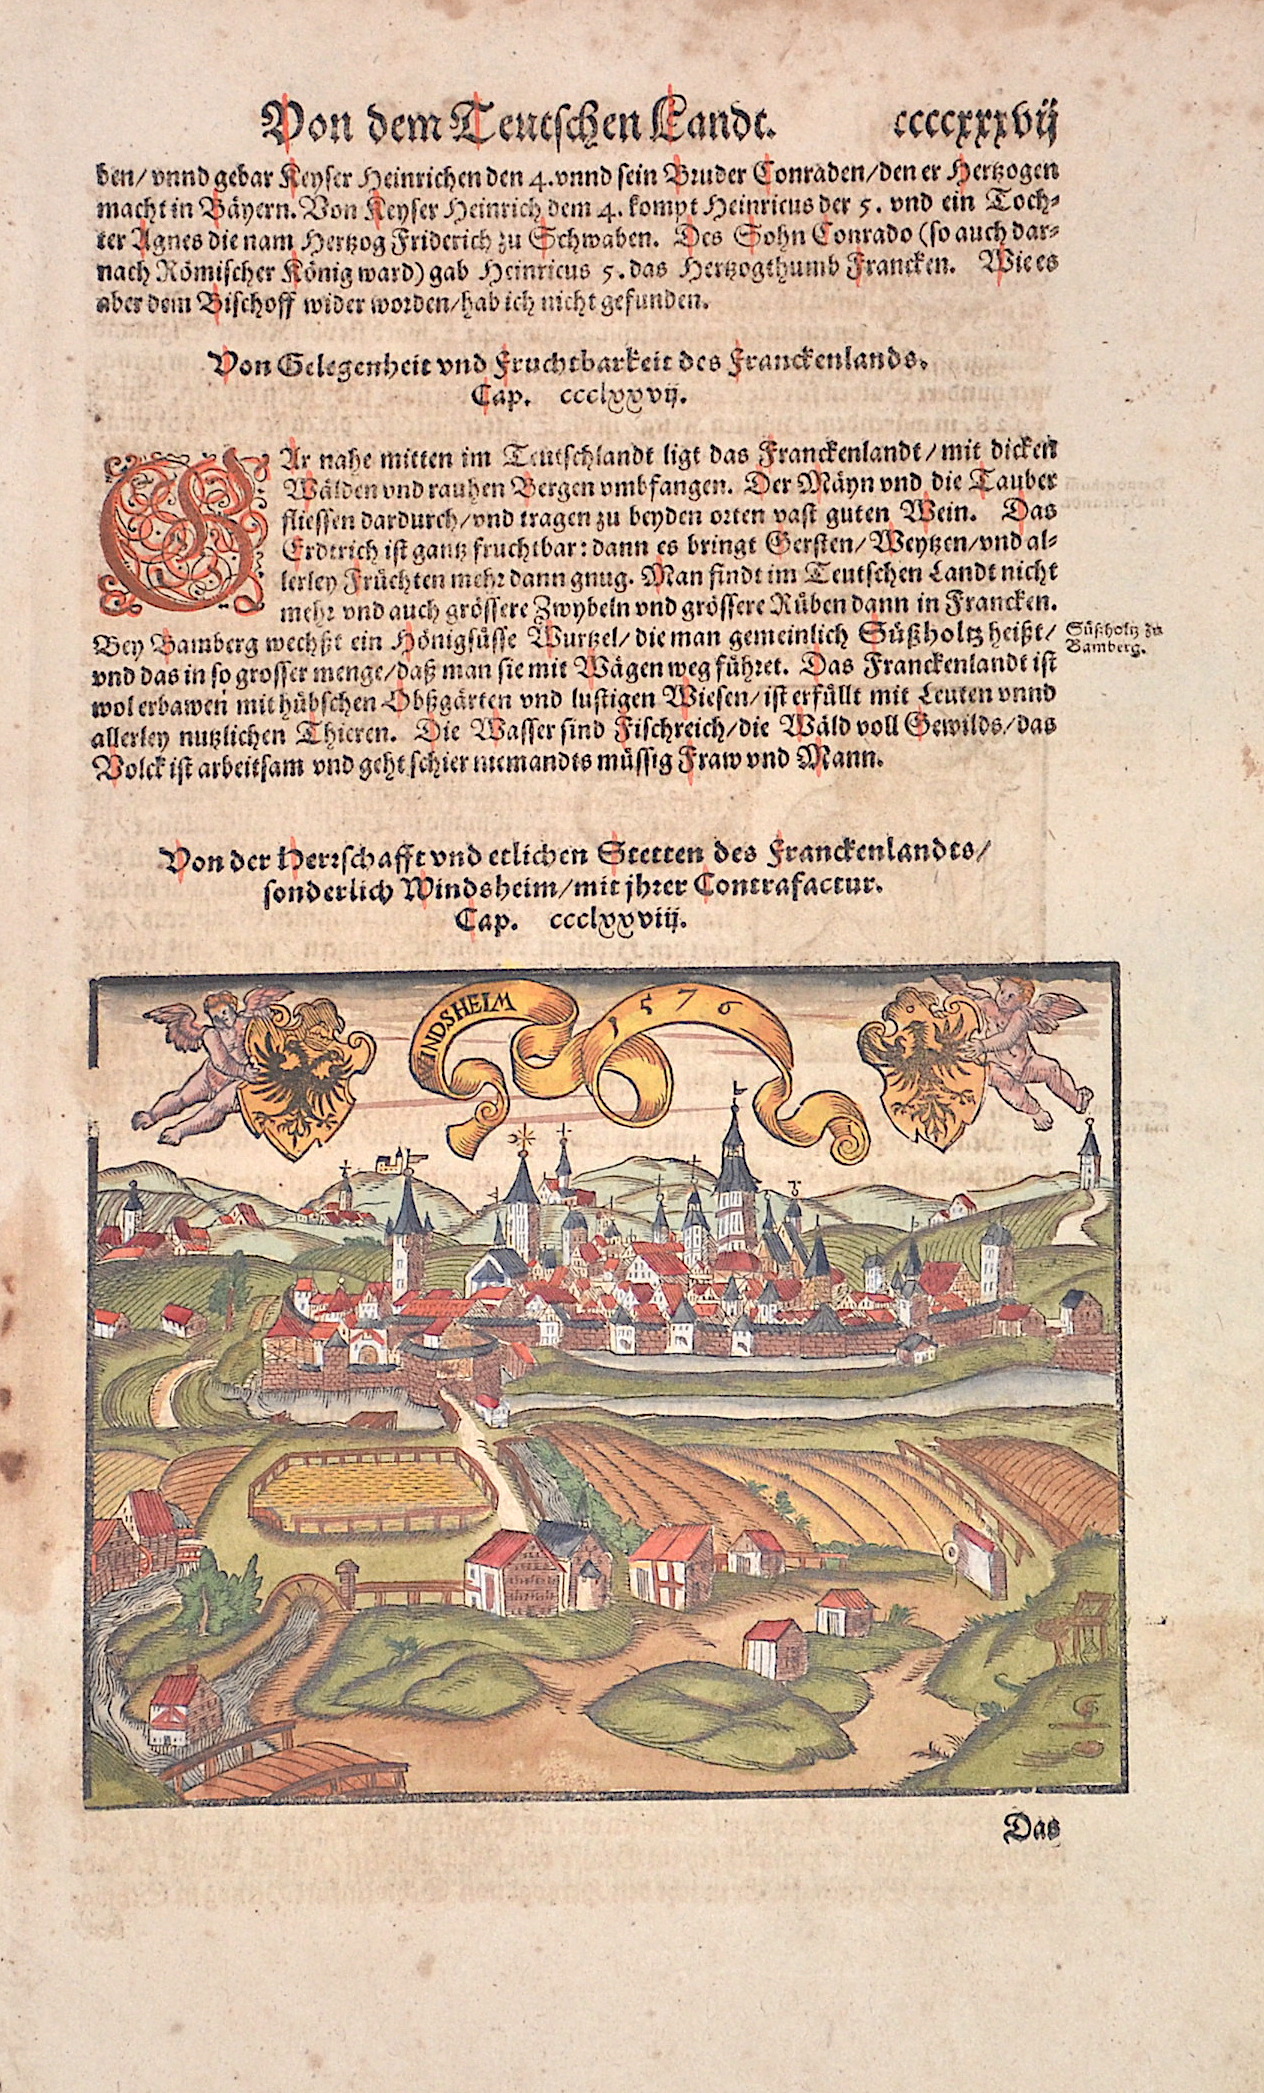 Münster Sebastian Von der Herschafft und etlichen Stetten des Franckenlandts, sonderlich Windsheim, mit ihrer Contrafactur.